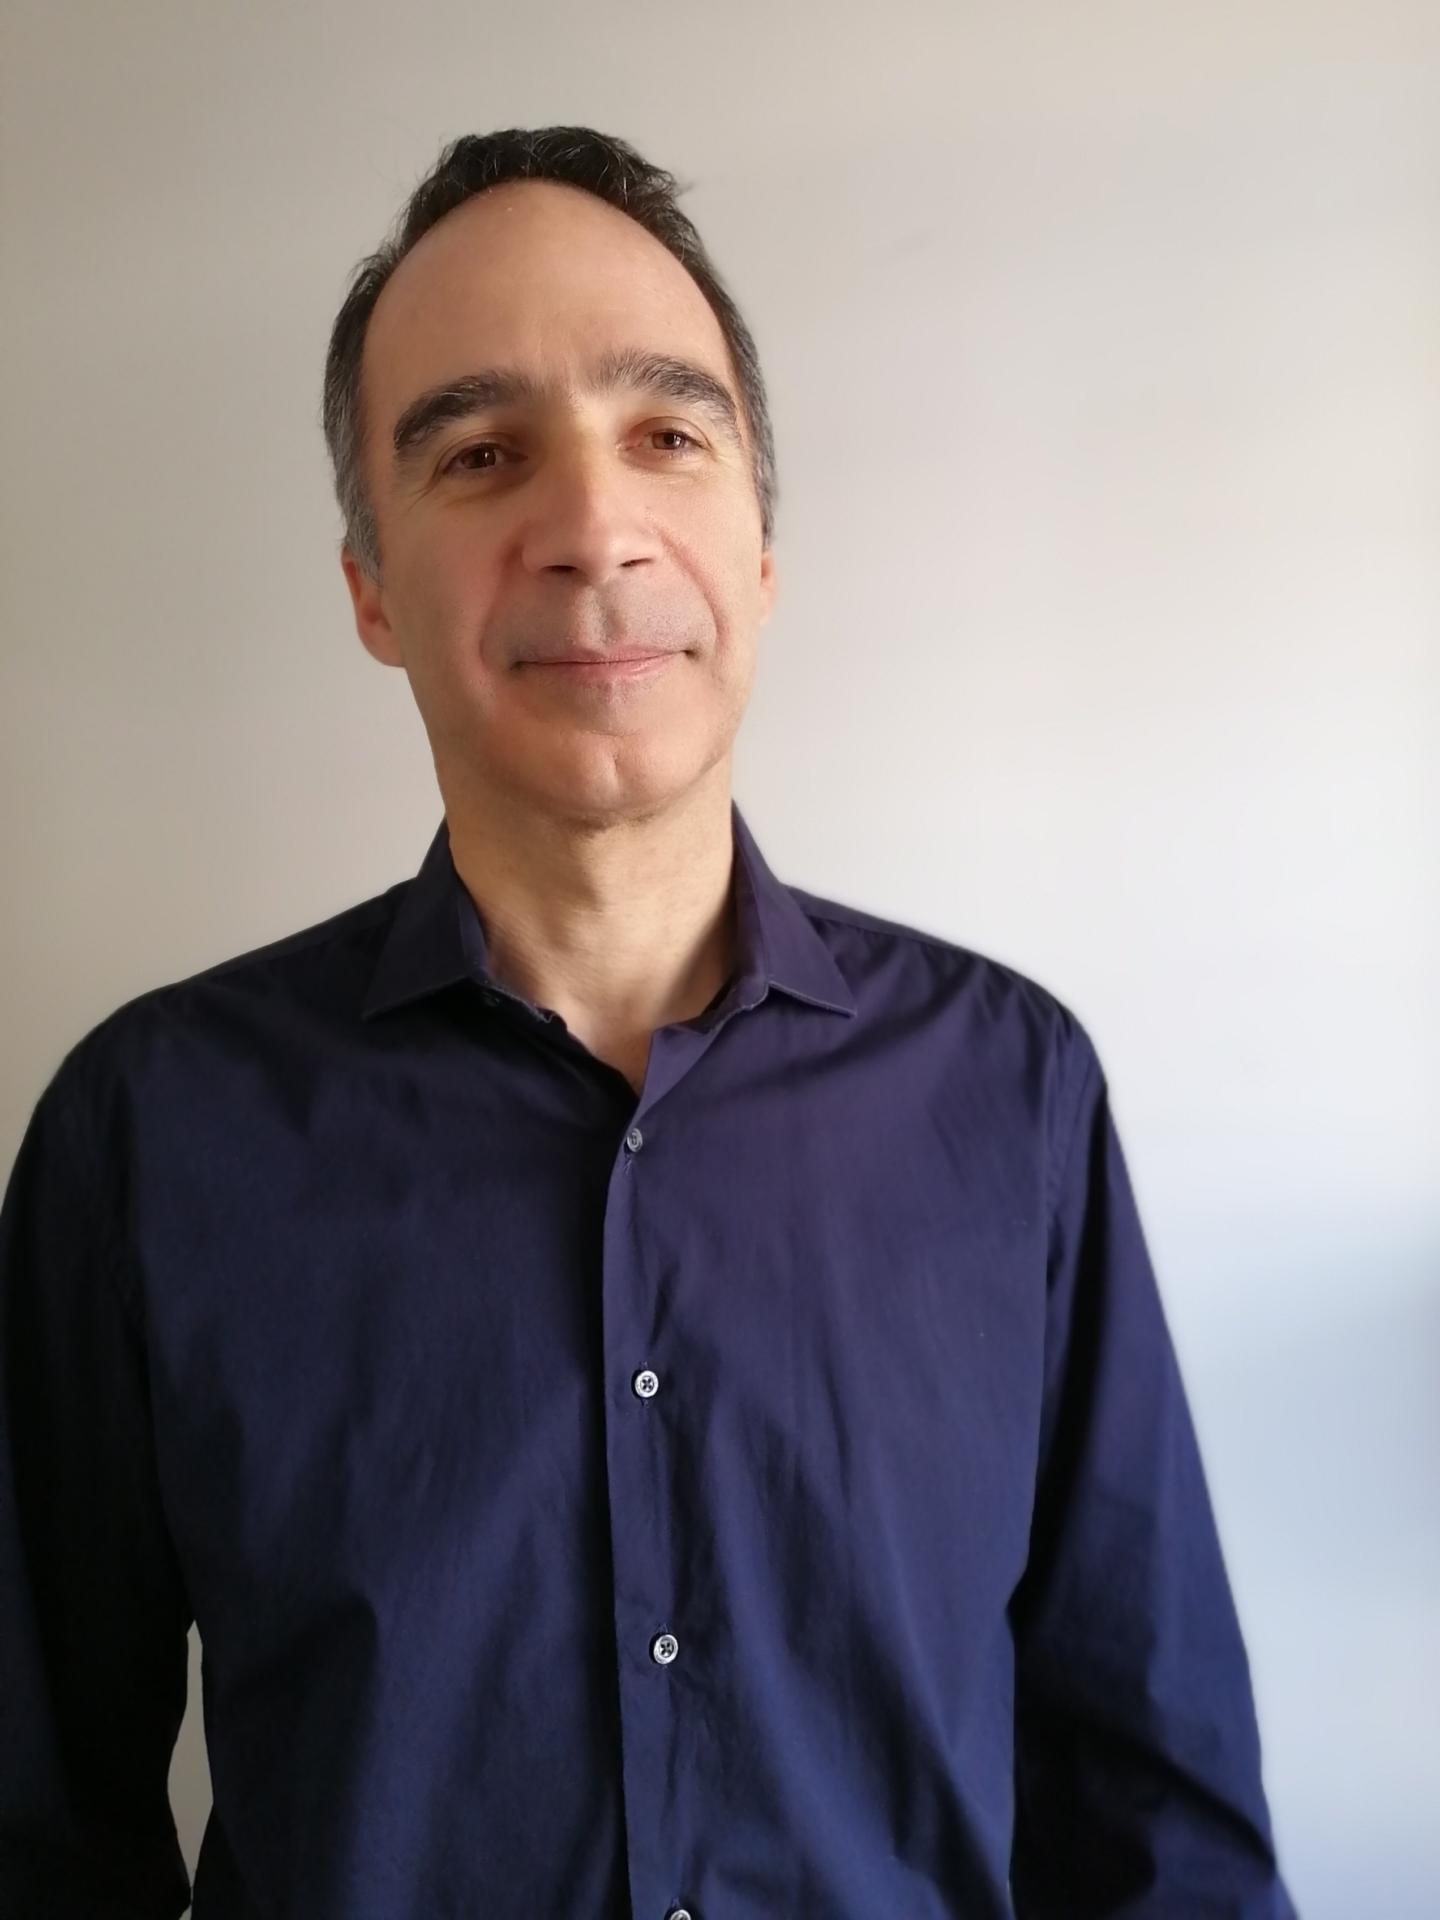 Senior Research Associate Dr. Panagiotis Prinos, Structural Genomics Consortium